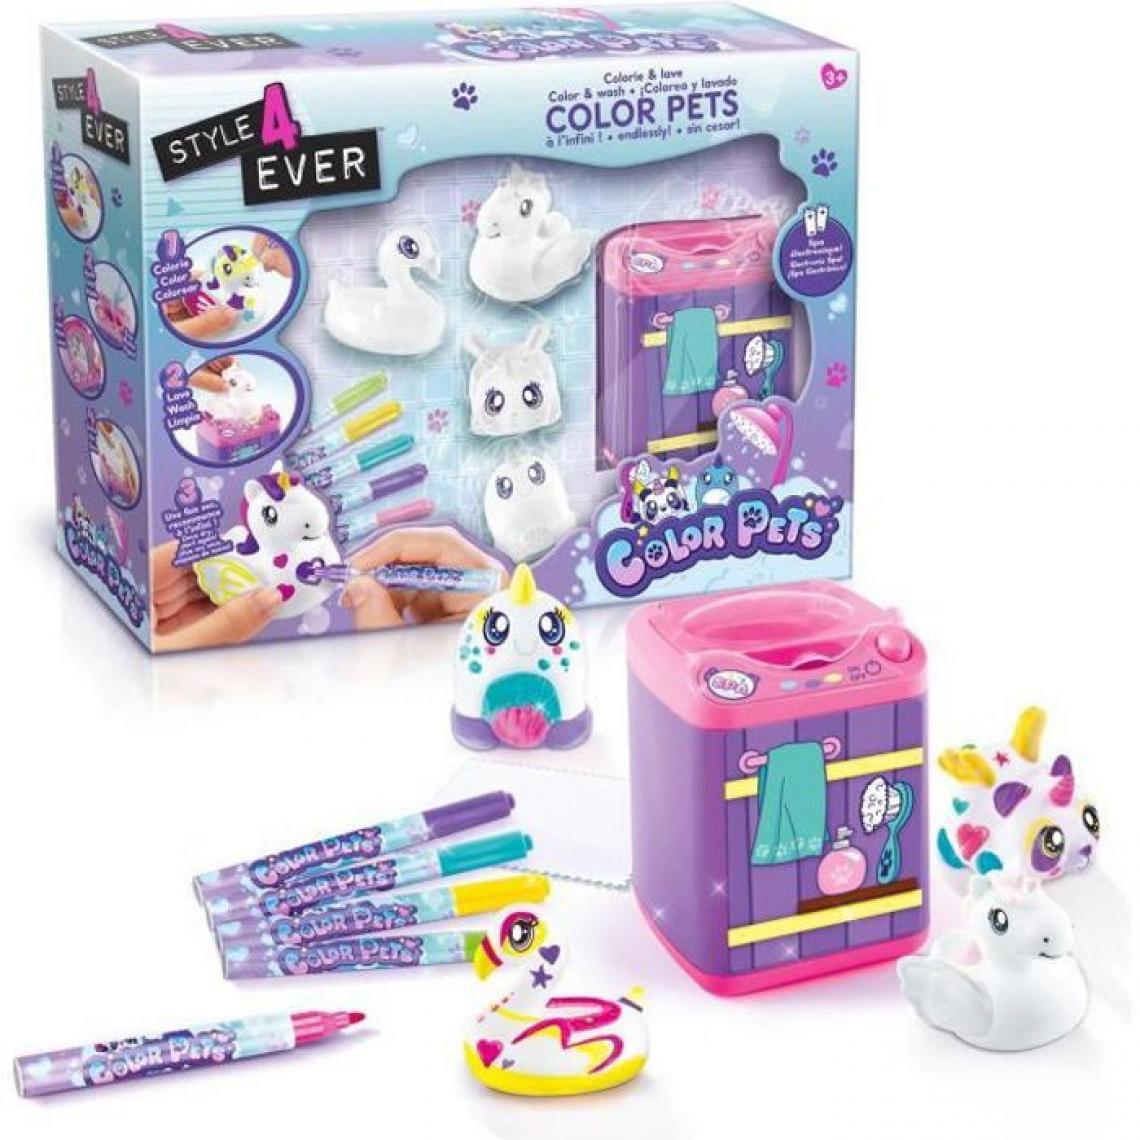 Canal Toys - STYLE FOR EVER Animaux a colorier et laver - SPA - Dessin et peinture